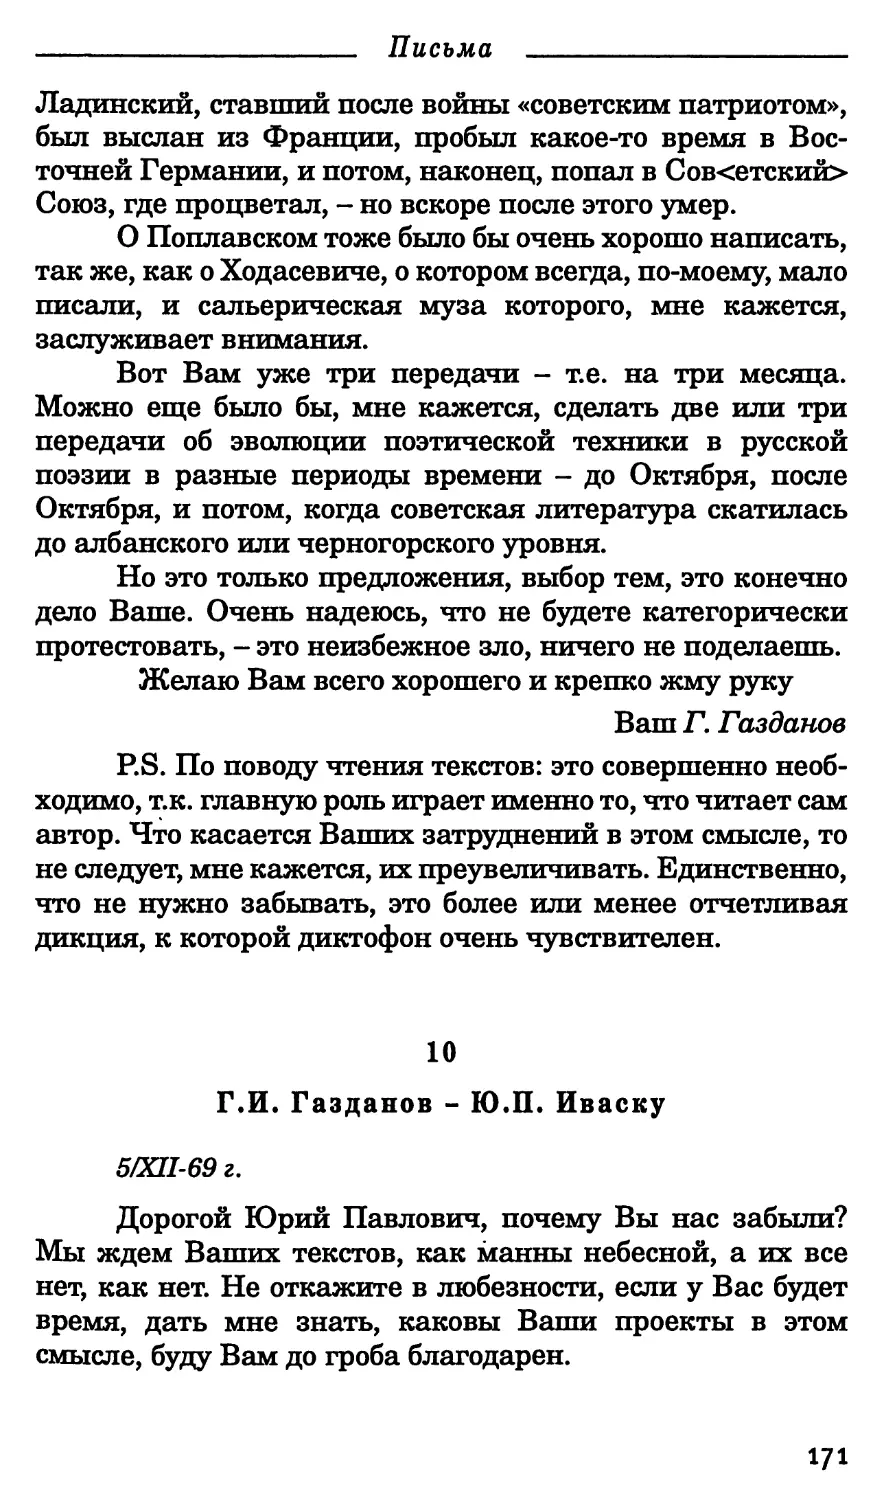 10. Г.И. Газданов - Ю.П. Иваску. 5 декабря 1969 г.